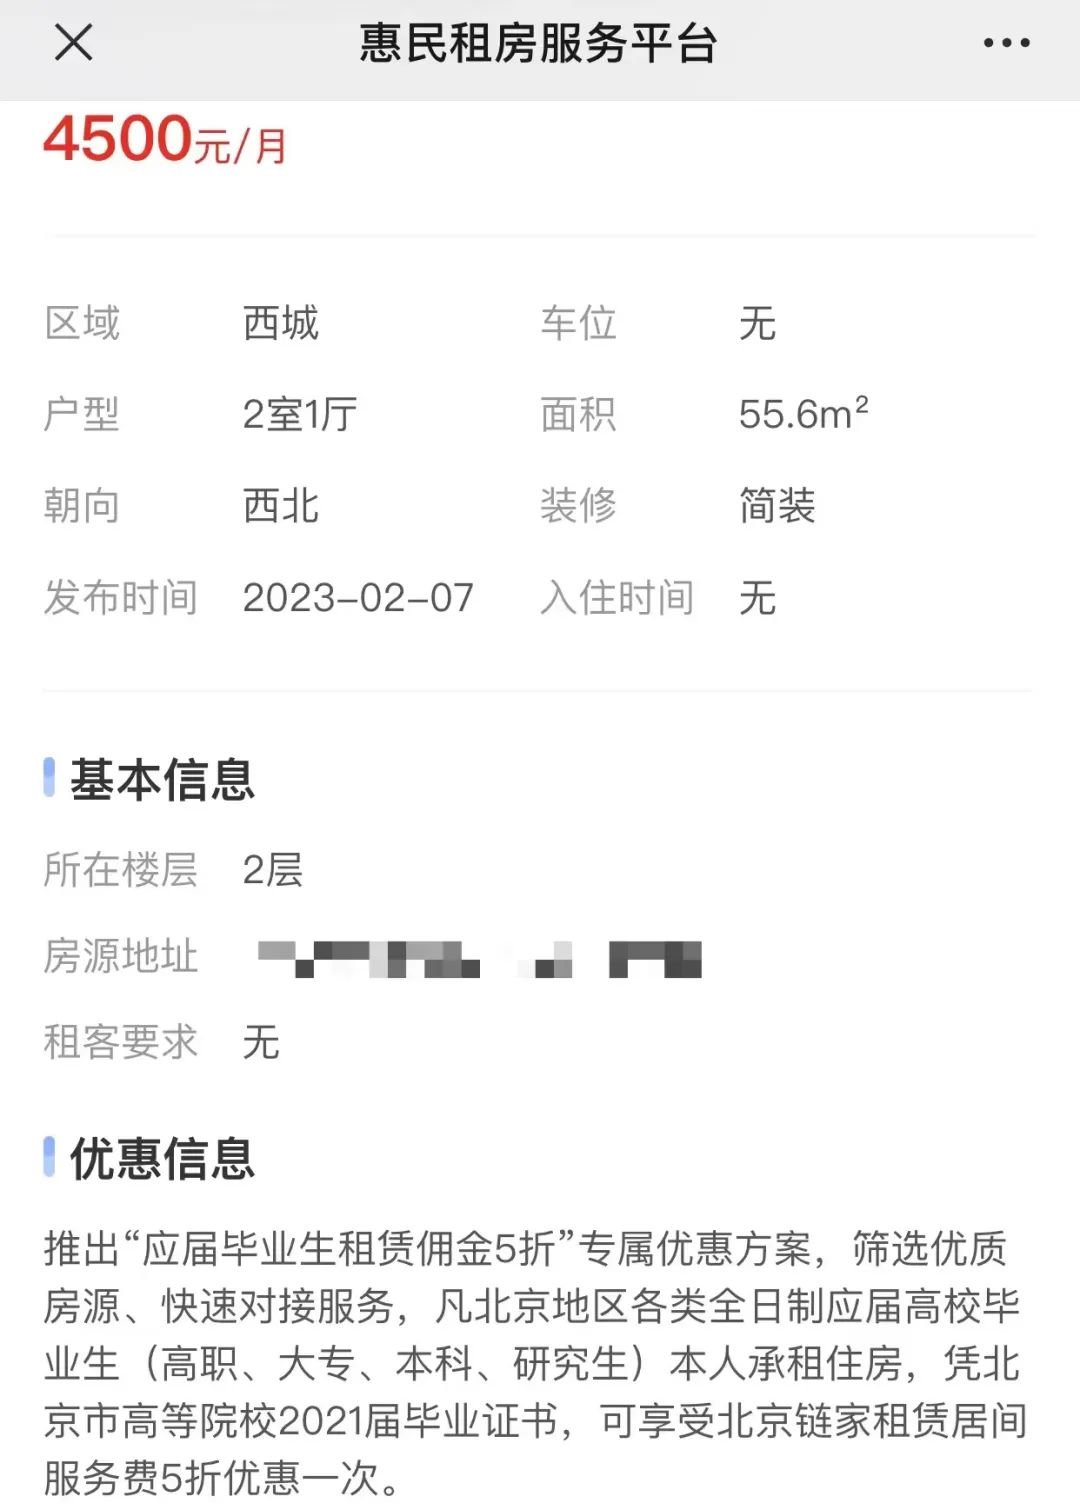 好消息！北京推出惠民租房服务平台 上线53万套优惠房源迎租客